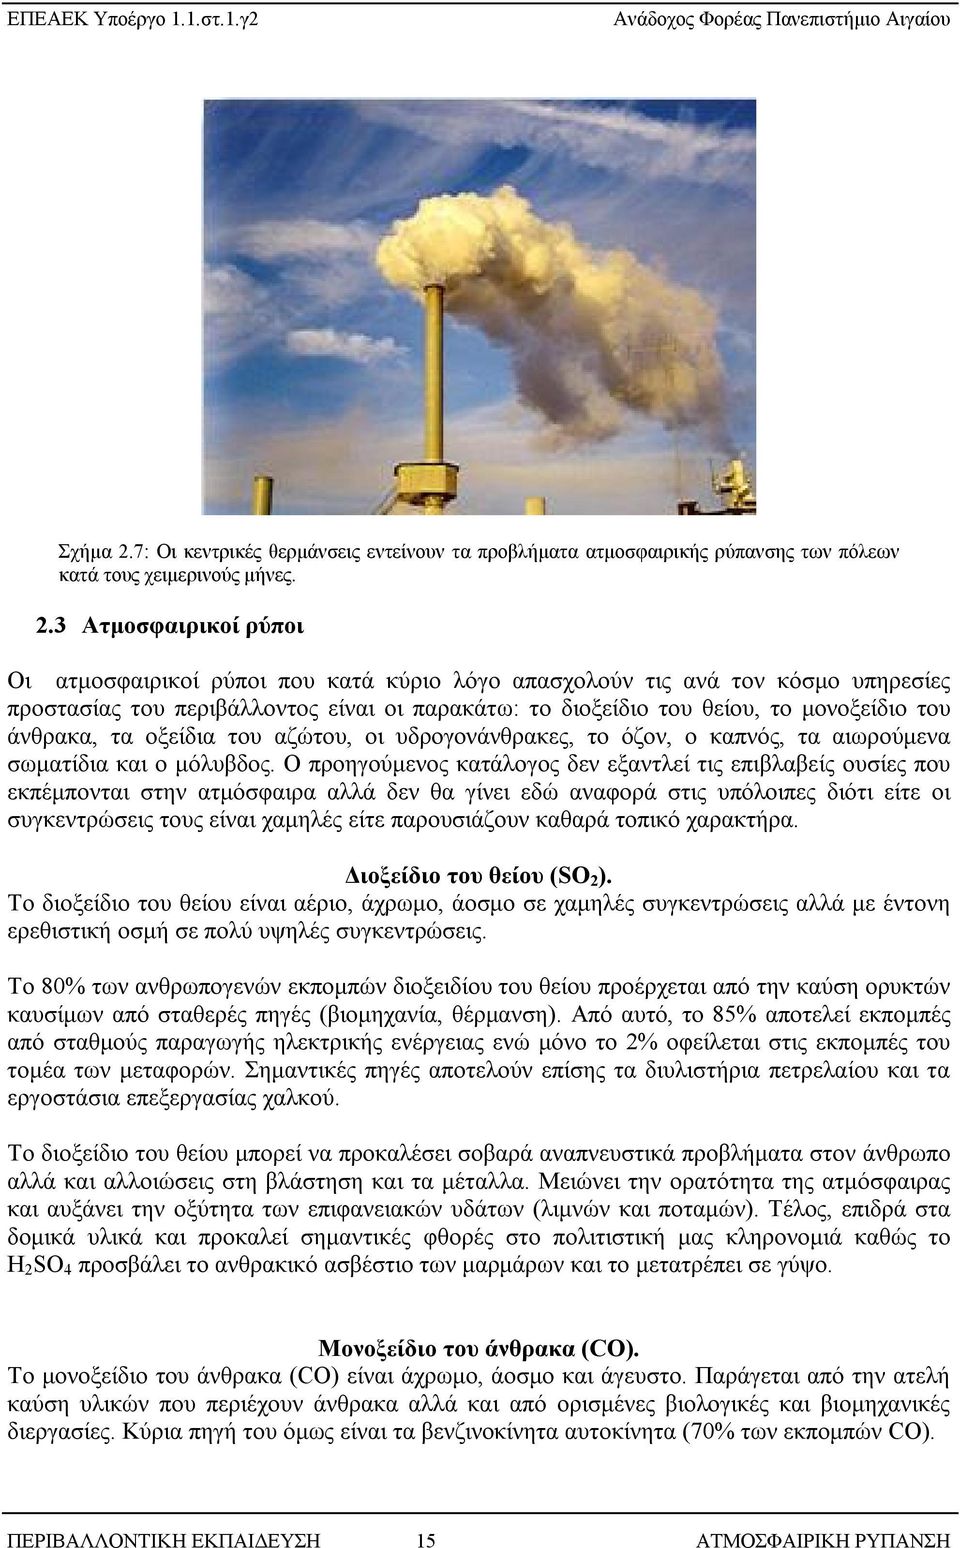 3 Ατμοσφαιρικοί ρύποι Οι ατμοσφαιρικοί ρύποι που κατά κύριο λόγο απασχολούν τις ανά τον κόσμο υπηρεσίες προστασίας του περιβάλλοντος είναι οι παρακάτω: το διοξείδιο του θείου, το μονοξείδιο του